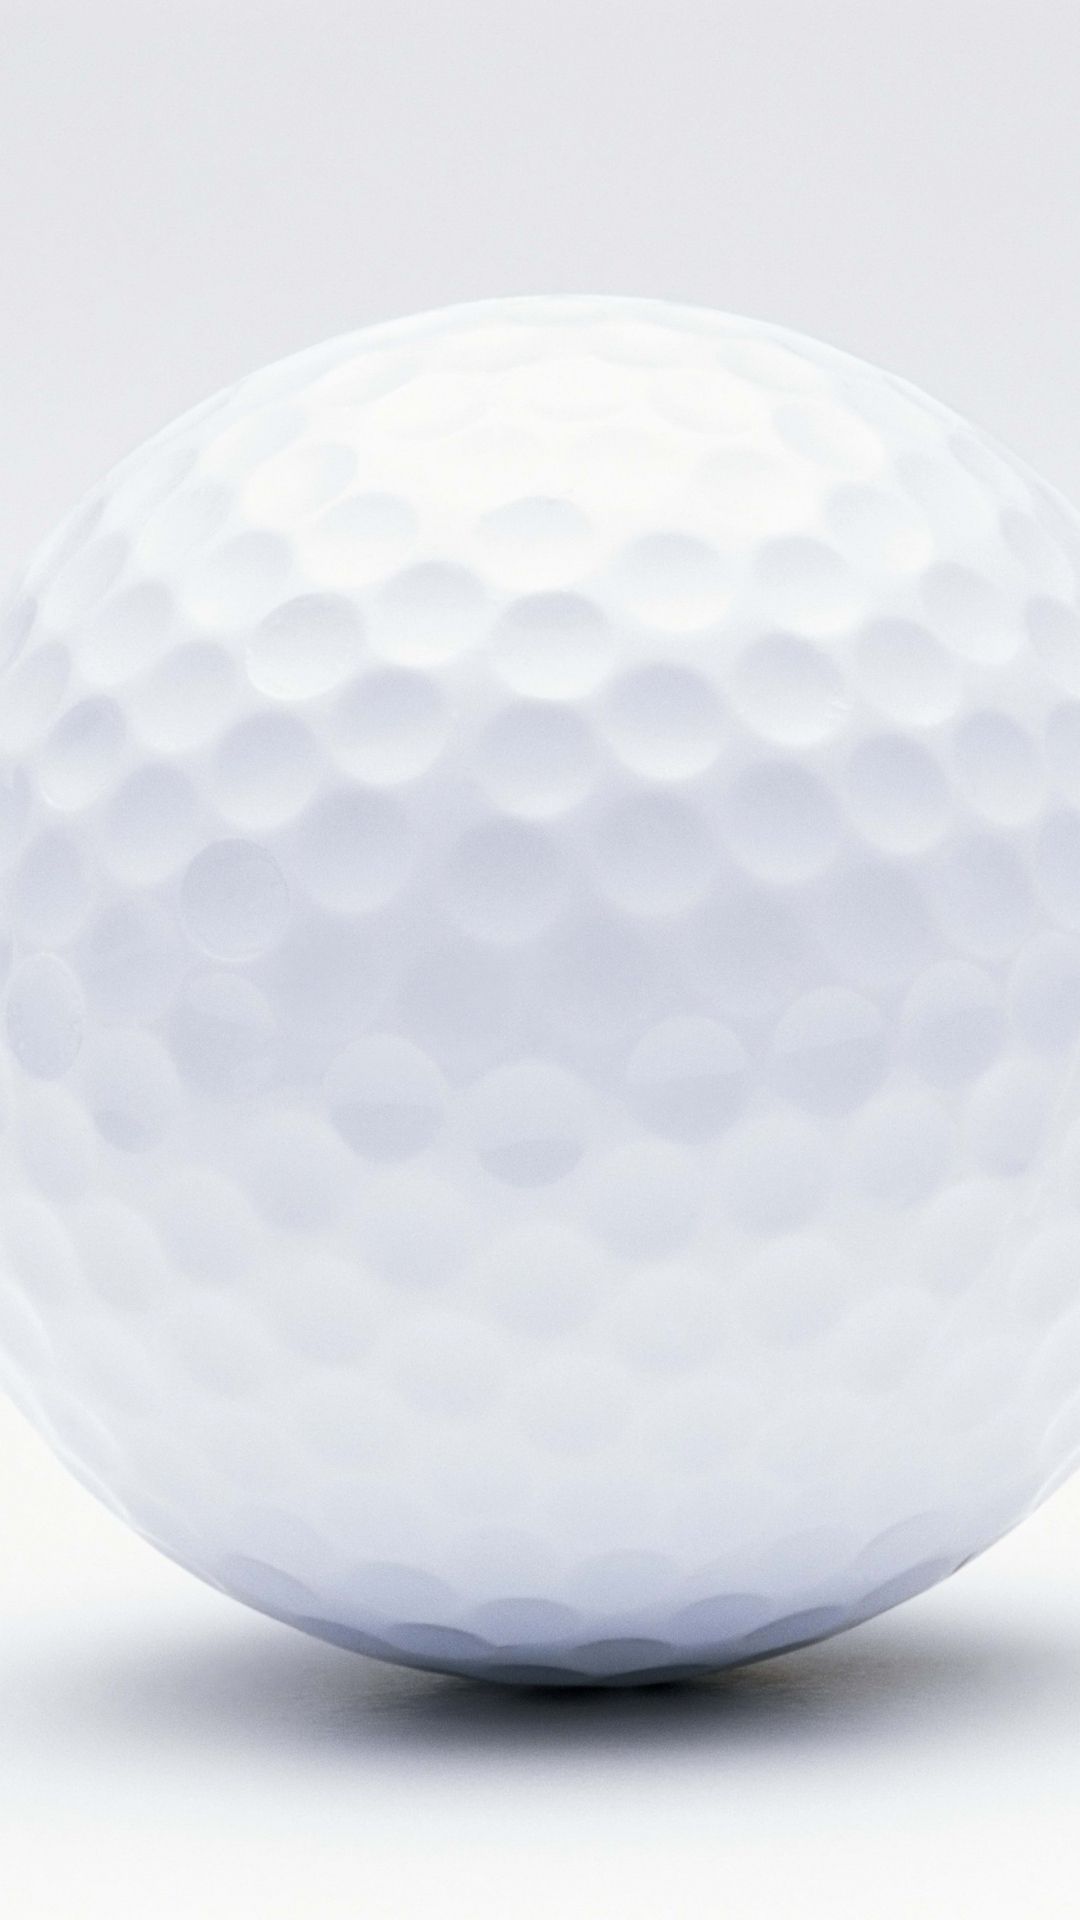 Golf Ball Wallpaper